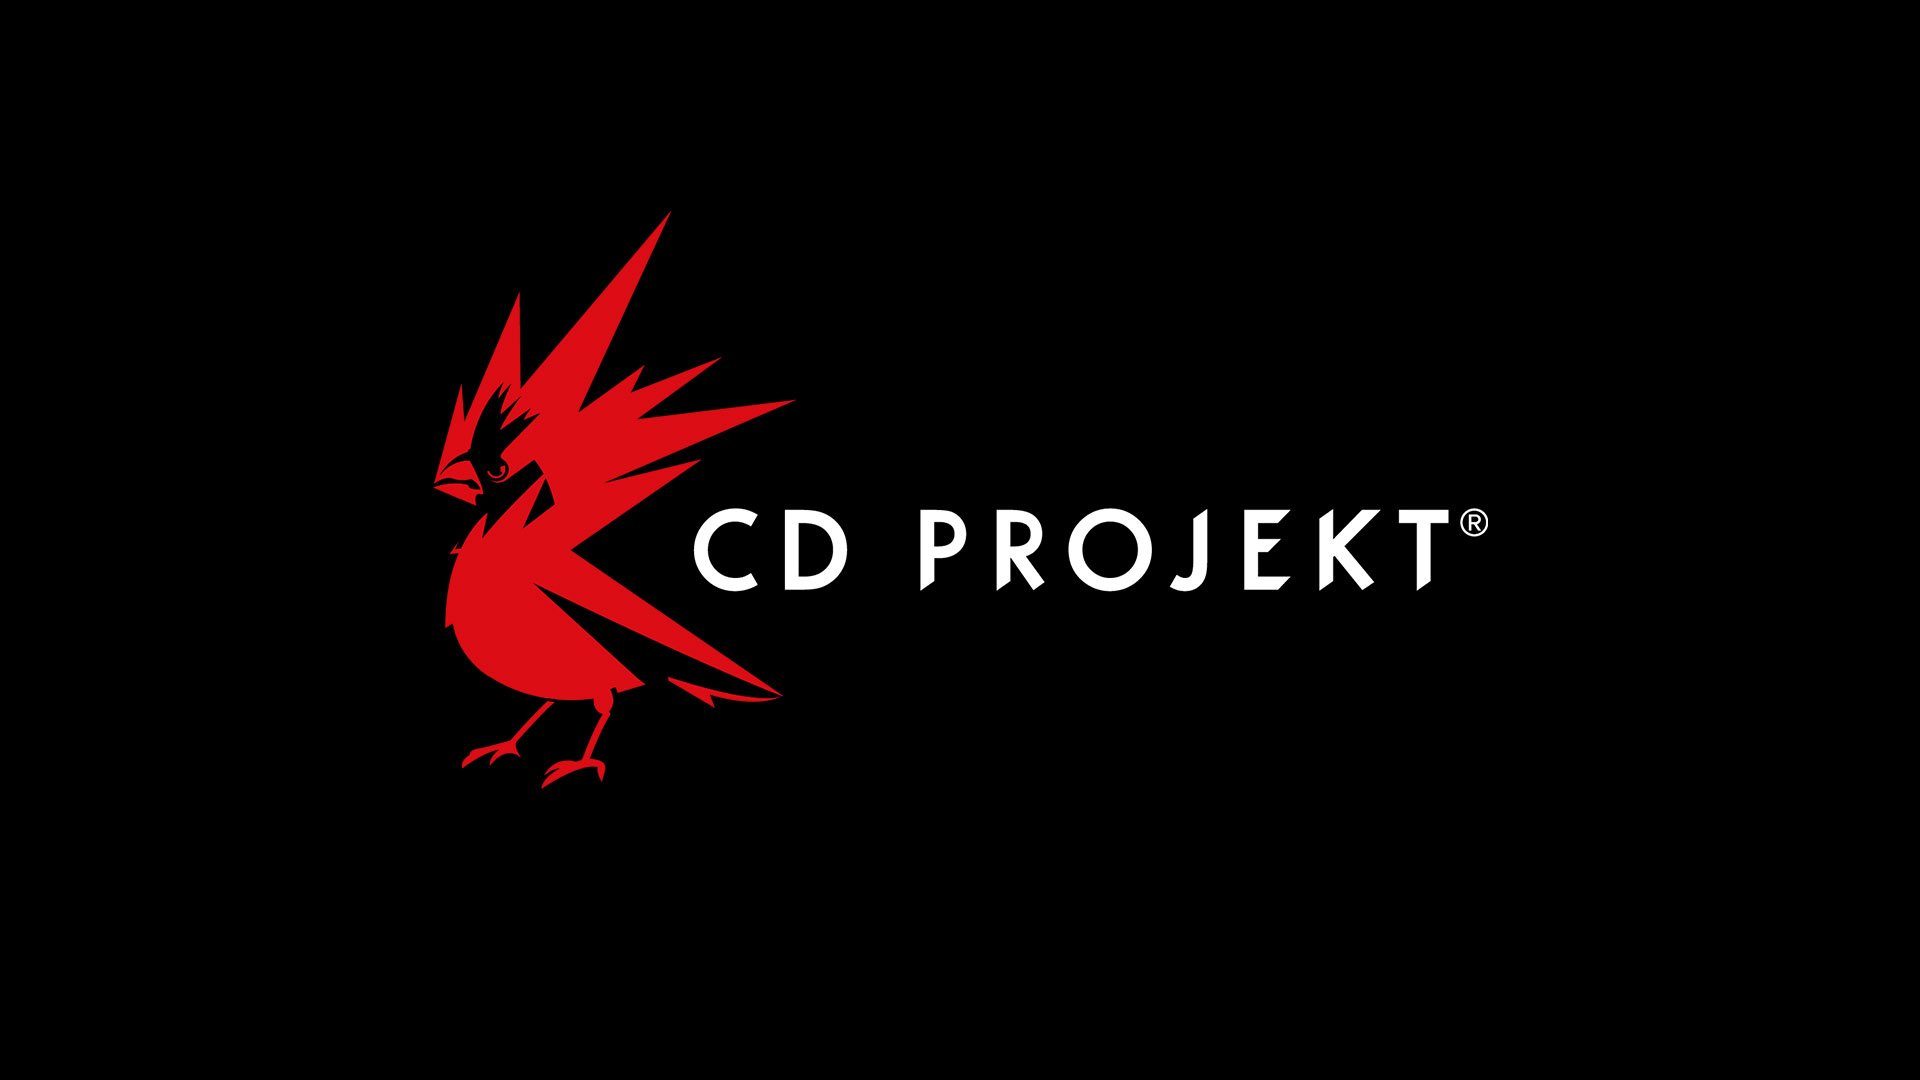 CD Projekt Sony